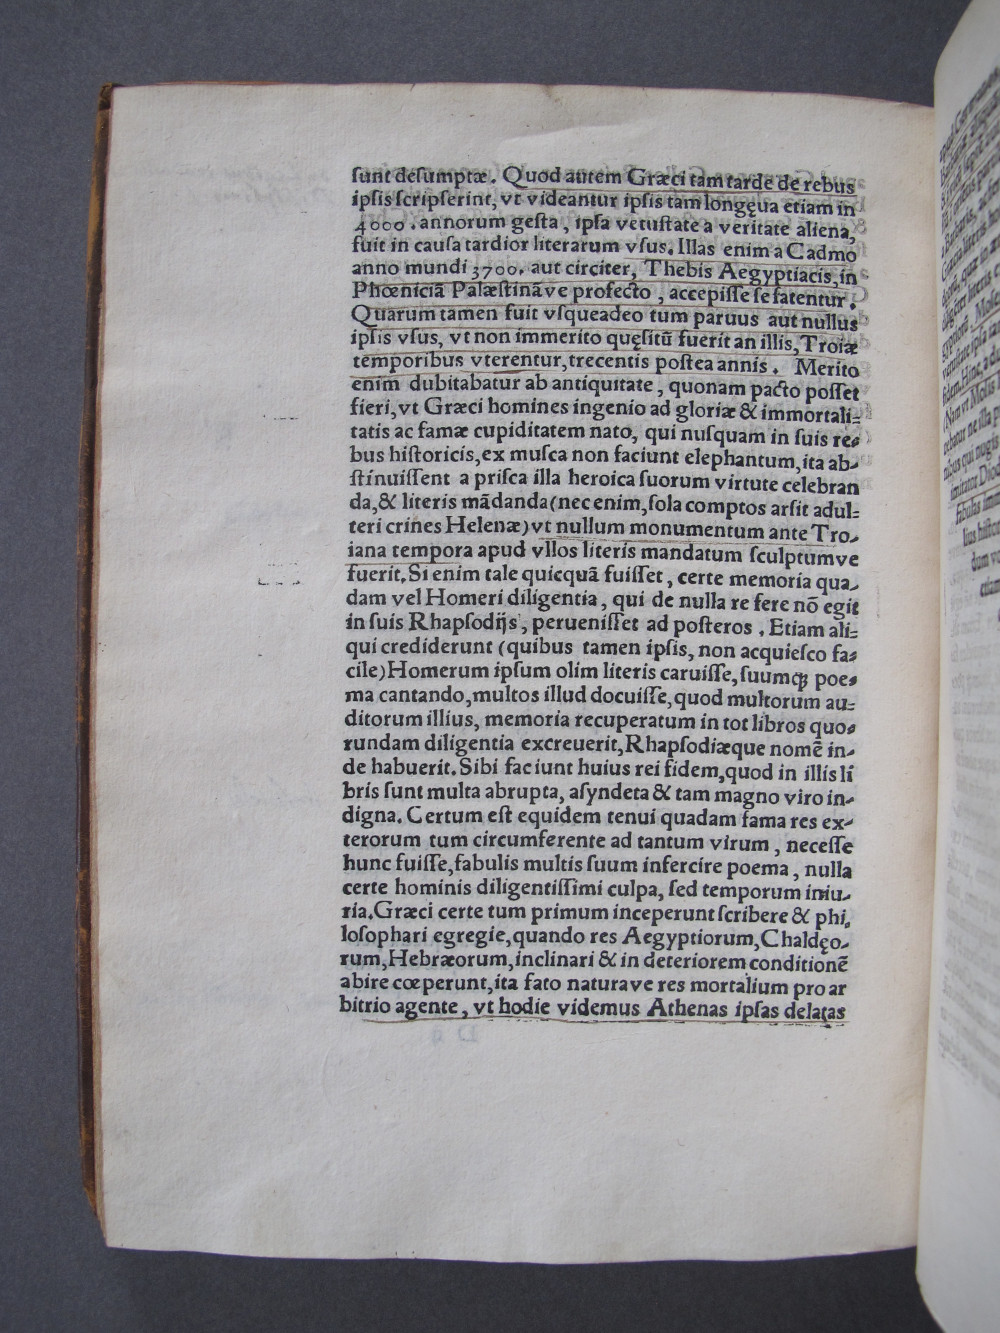 Folio D2 verso